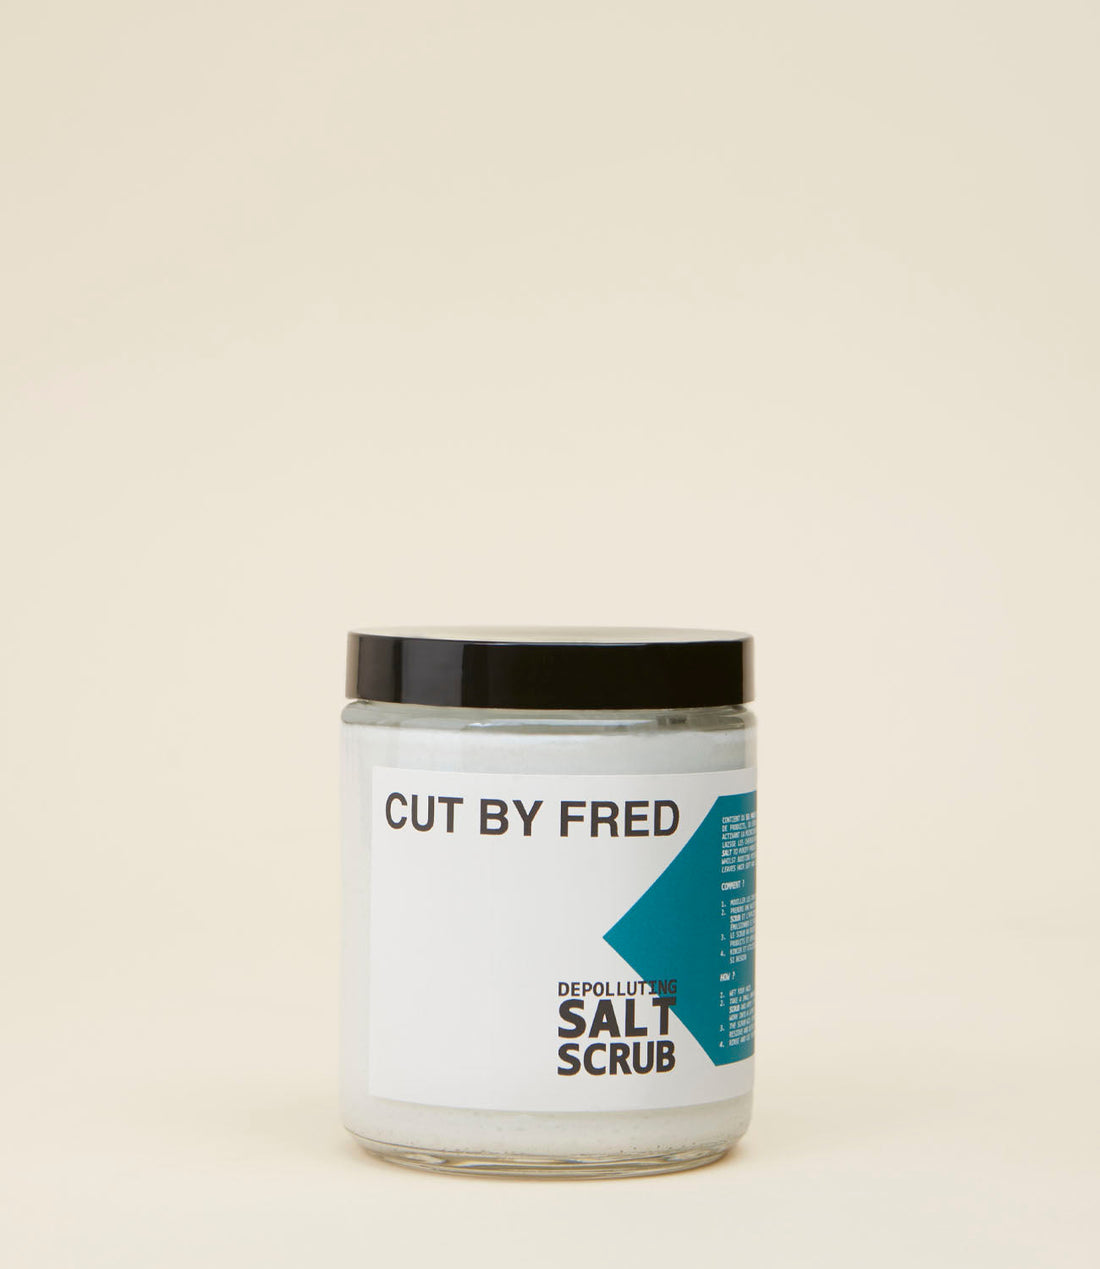 Depolluting salt scrub de Cut by Fred 300 g